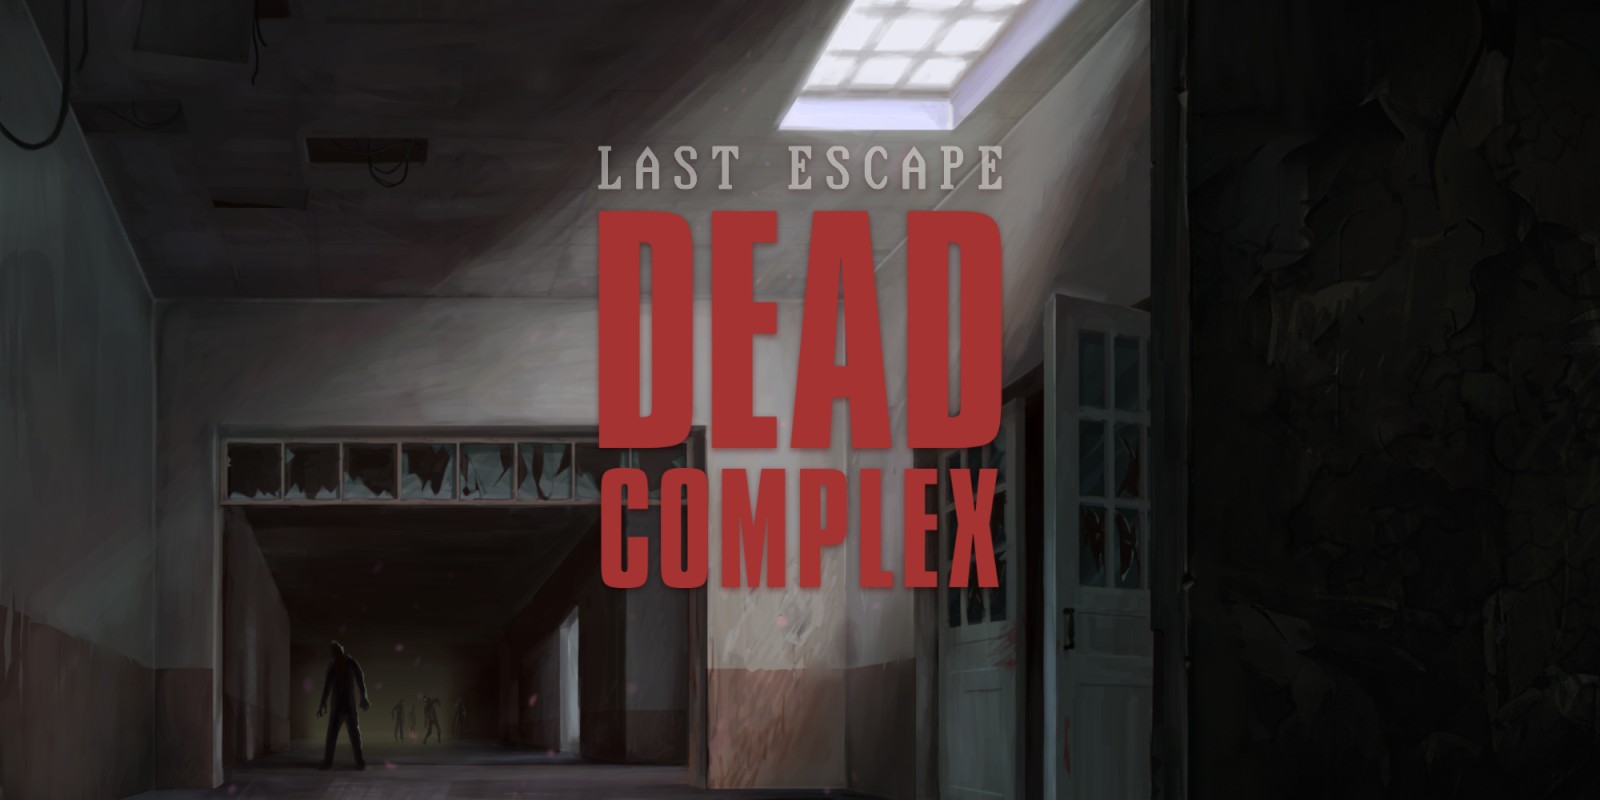 Last Escape: Dead Complex